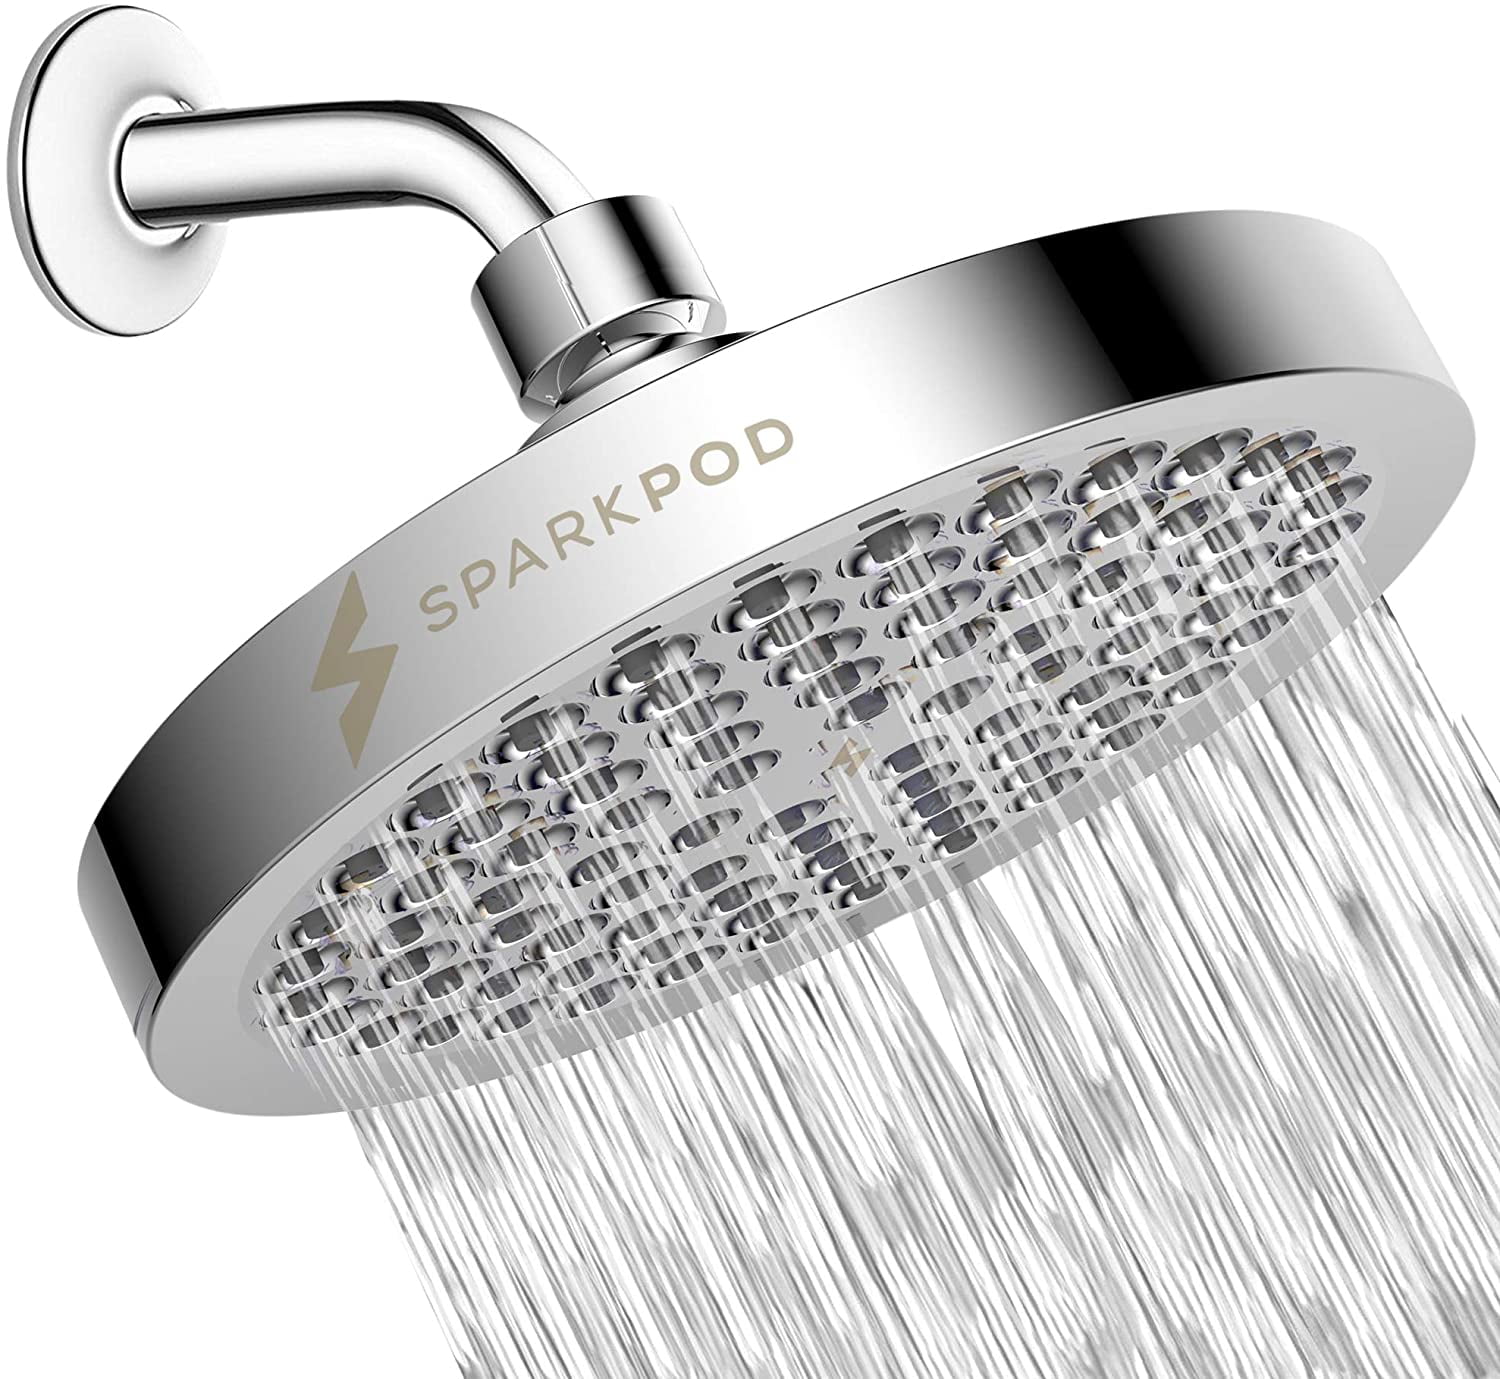 Luxury Modern Brushed Nickel Look High Pressure Rain SparkPod Shower Head 